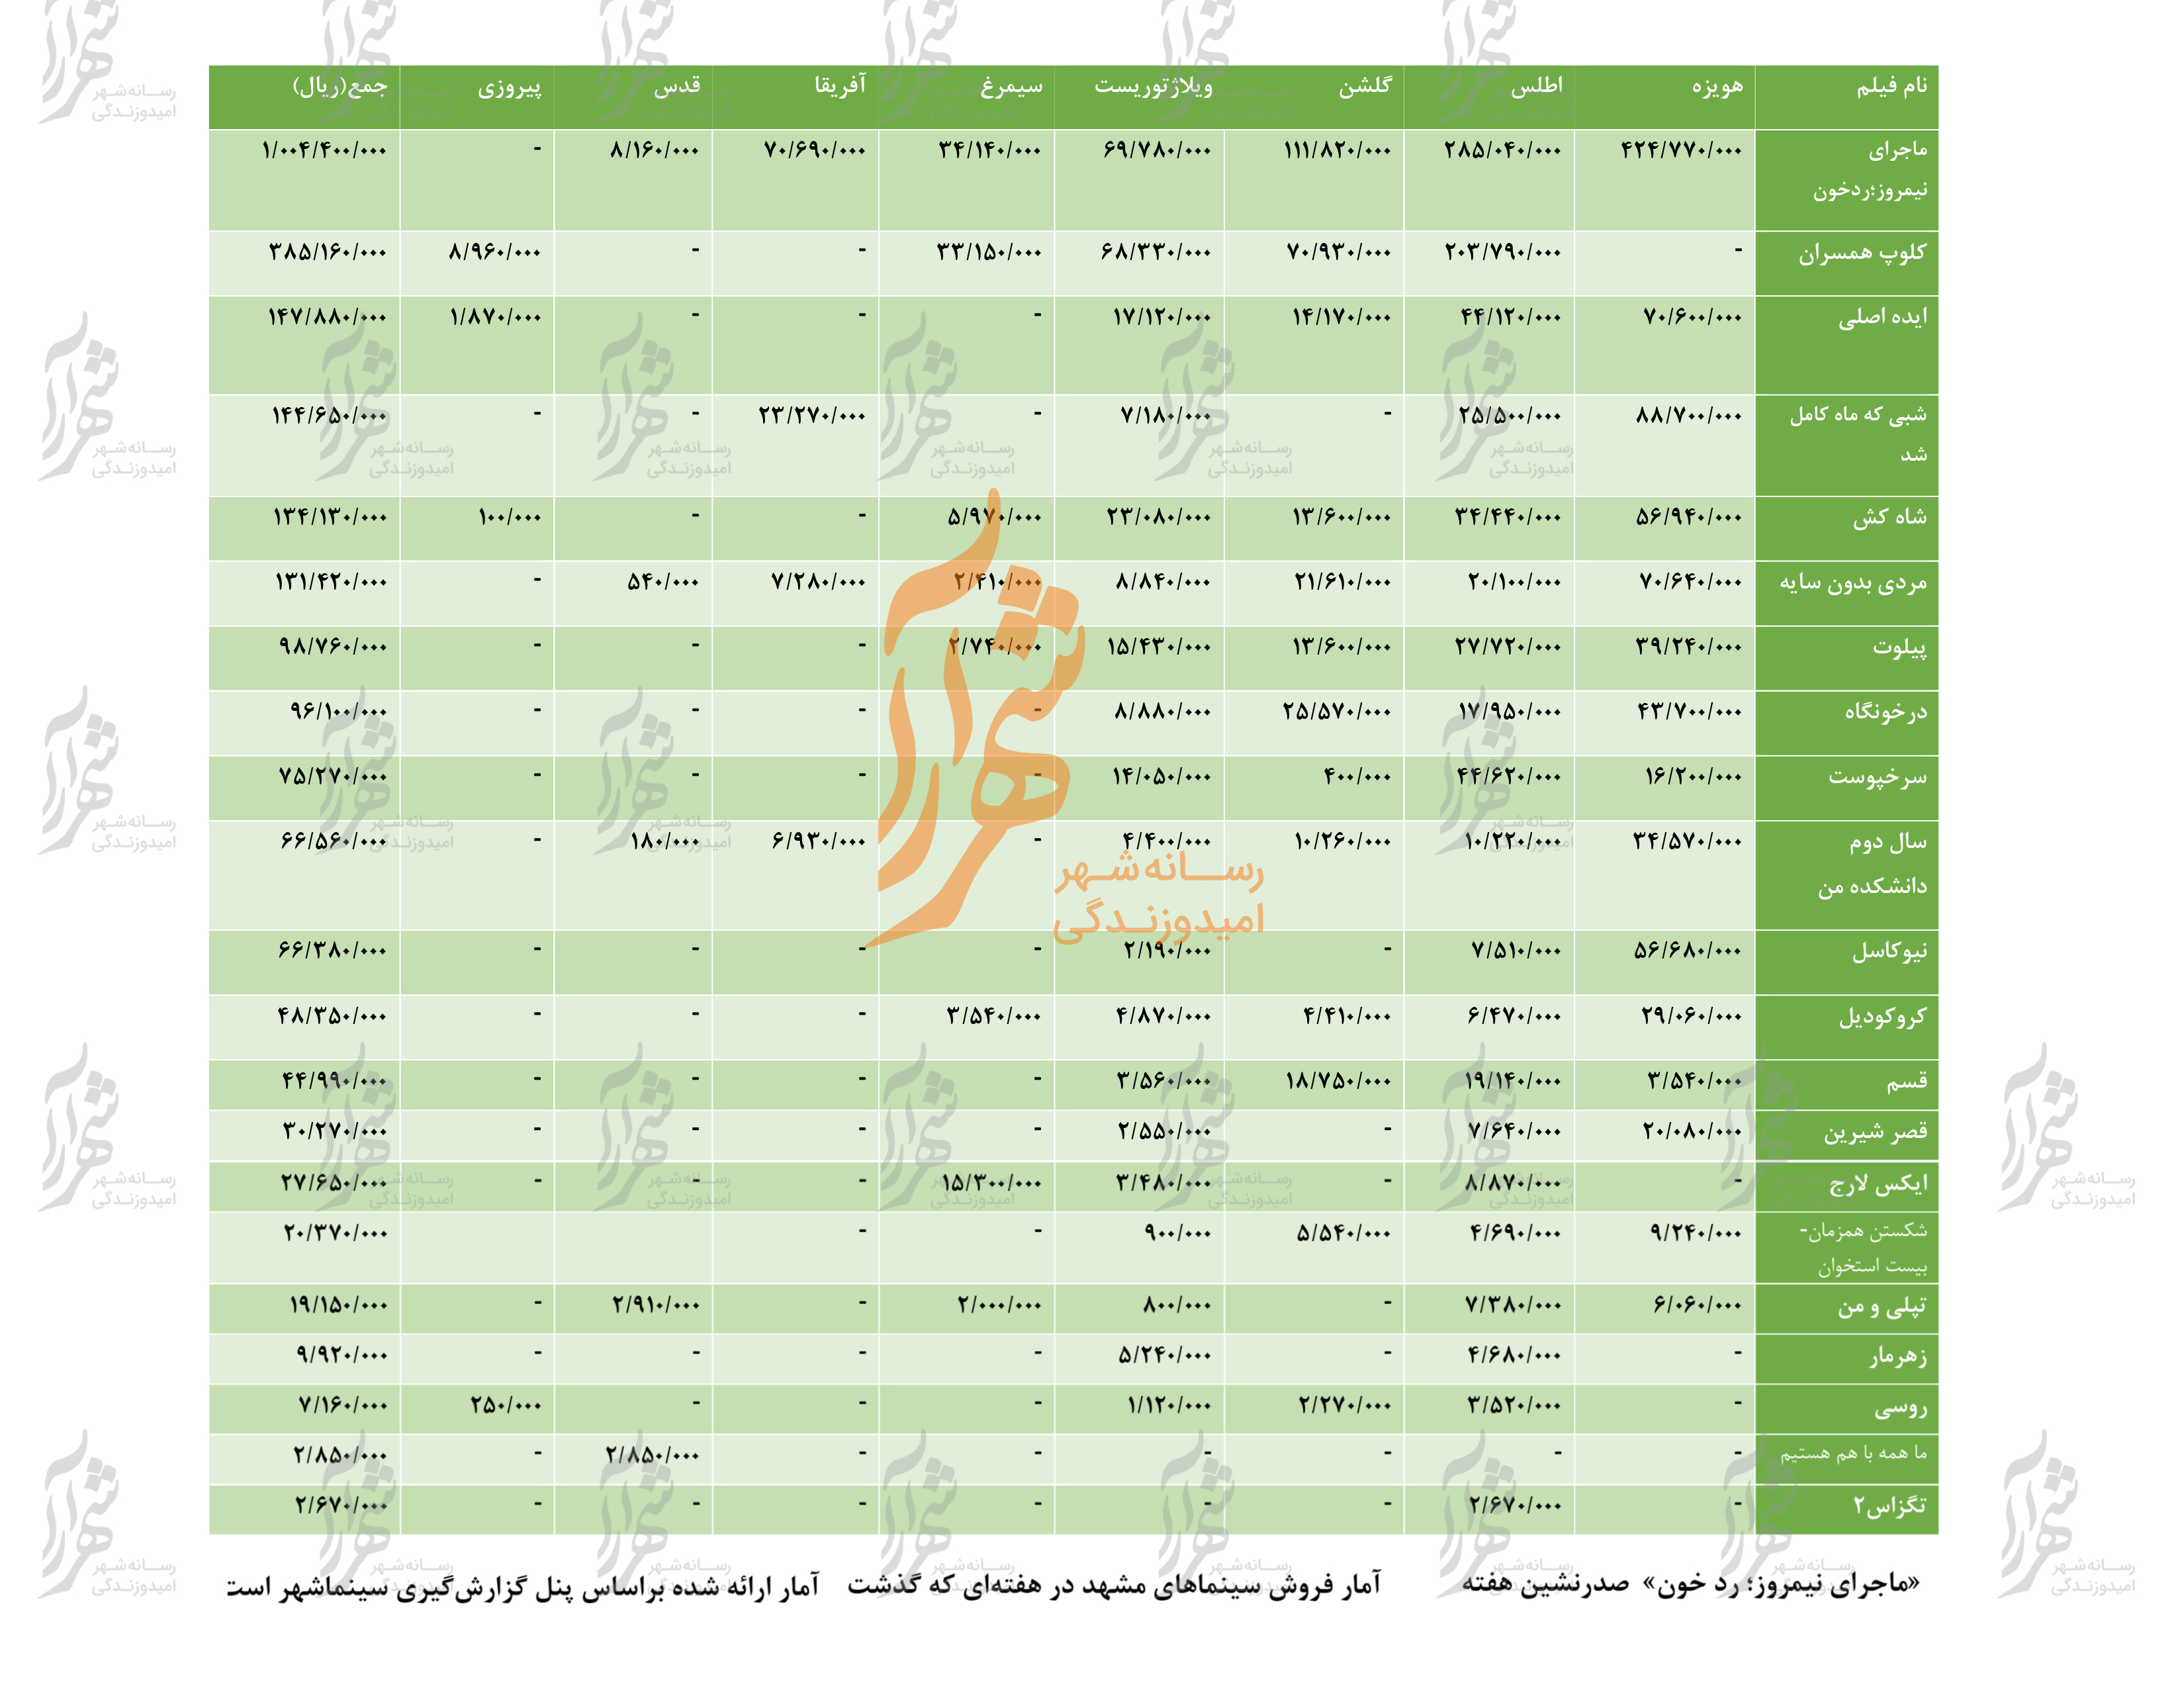 جدول فروش سینماهای مشهد از ۵ مهر تا ۱۱ مهر